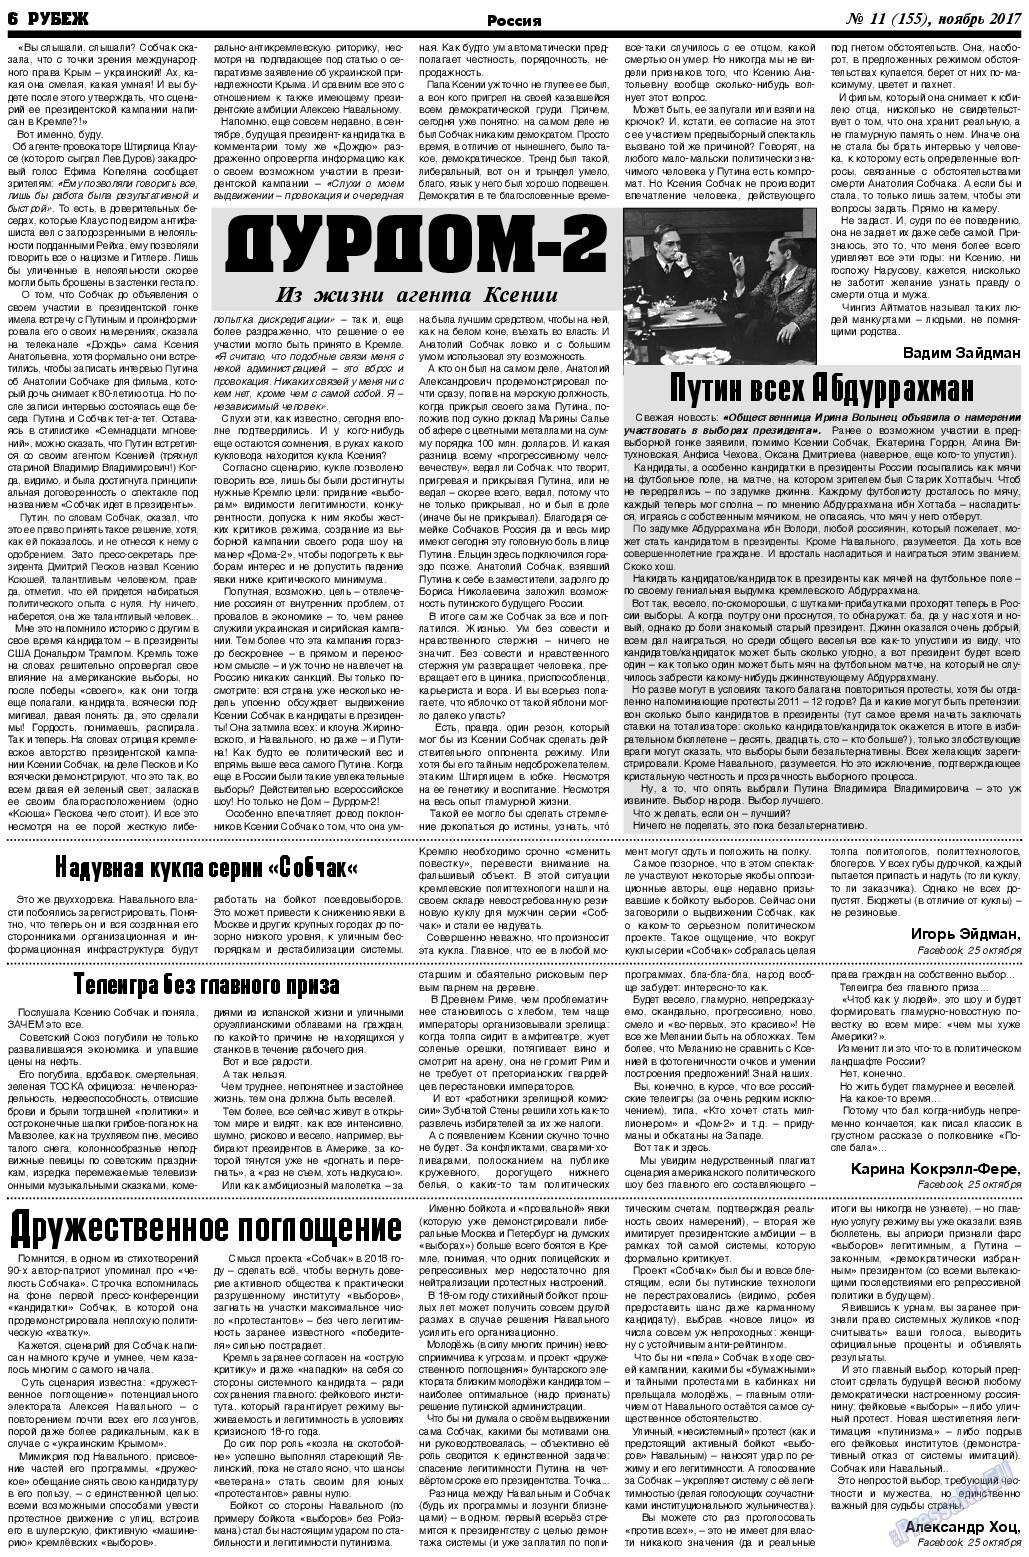 Рубеж (газета). 2017 год, номер 11, стр. 6